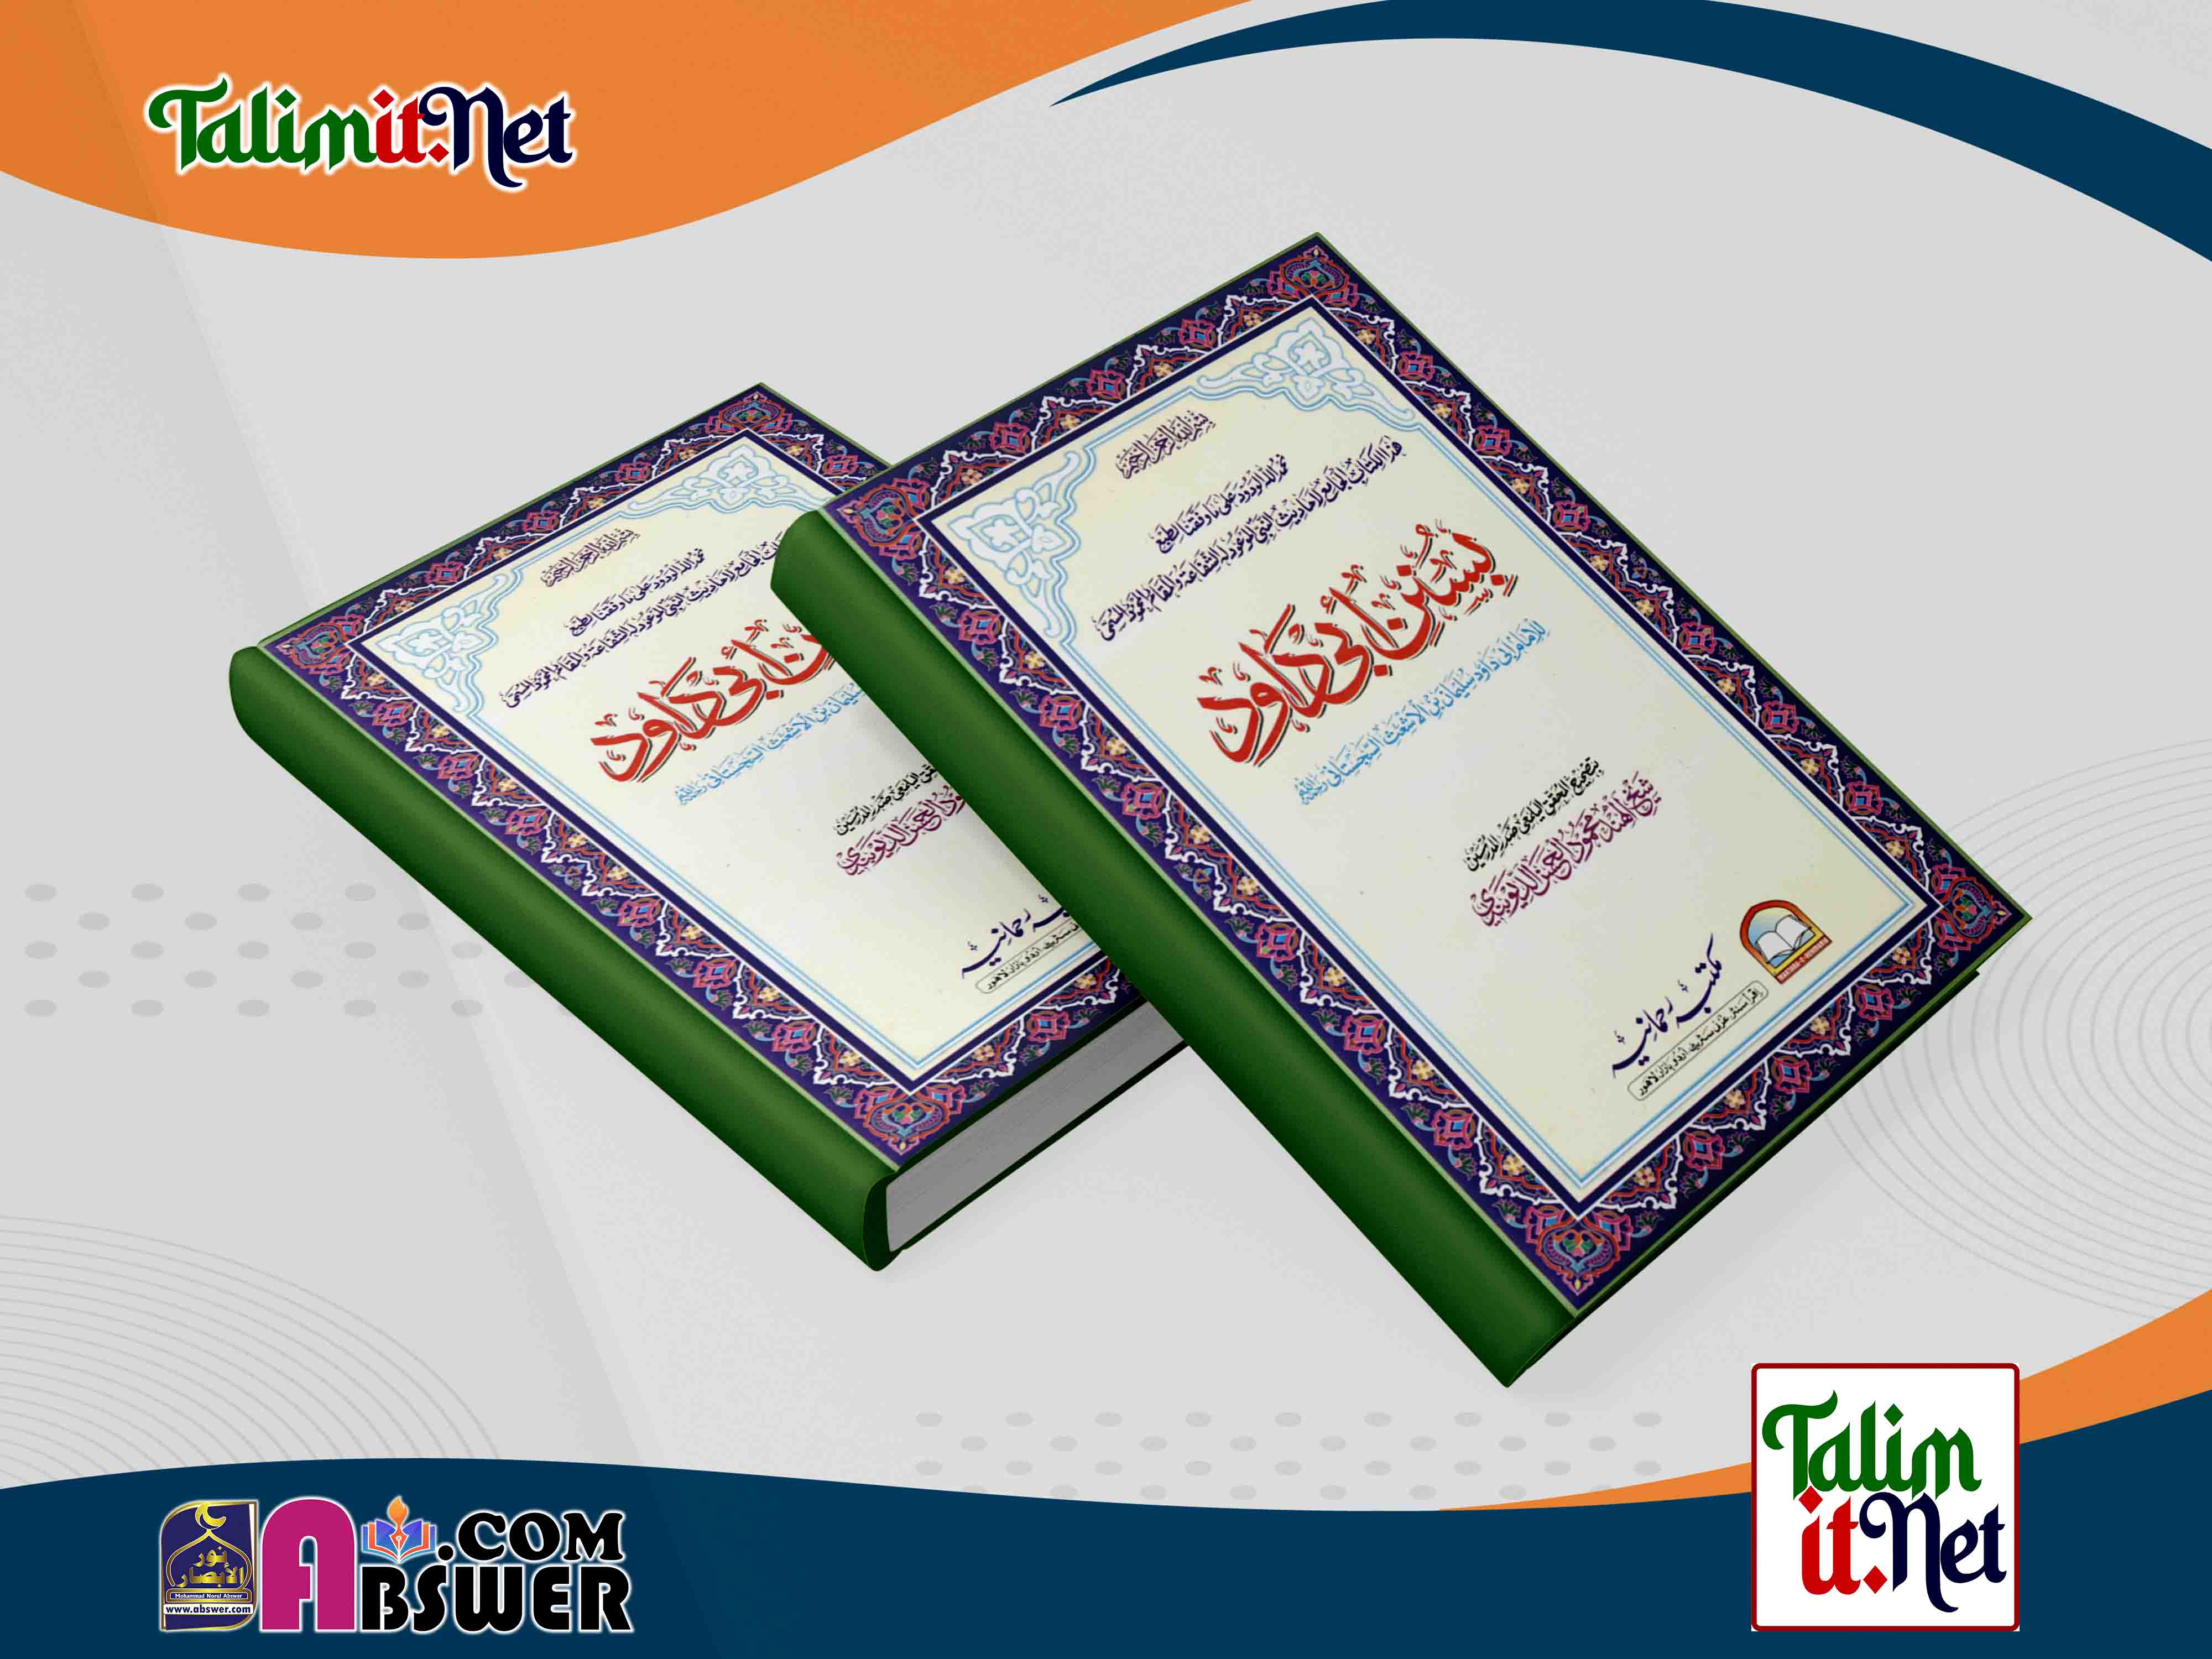 সুনানু আবি দাউদ - ১ম খন্ড | কামিল হাদীস বিভাগের মূল কিতাব পিডিএফ | Sunan Abu Dawood 1st Part - Kamil Hadith Dept Book Pdf